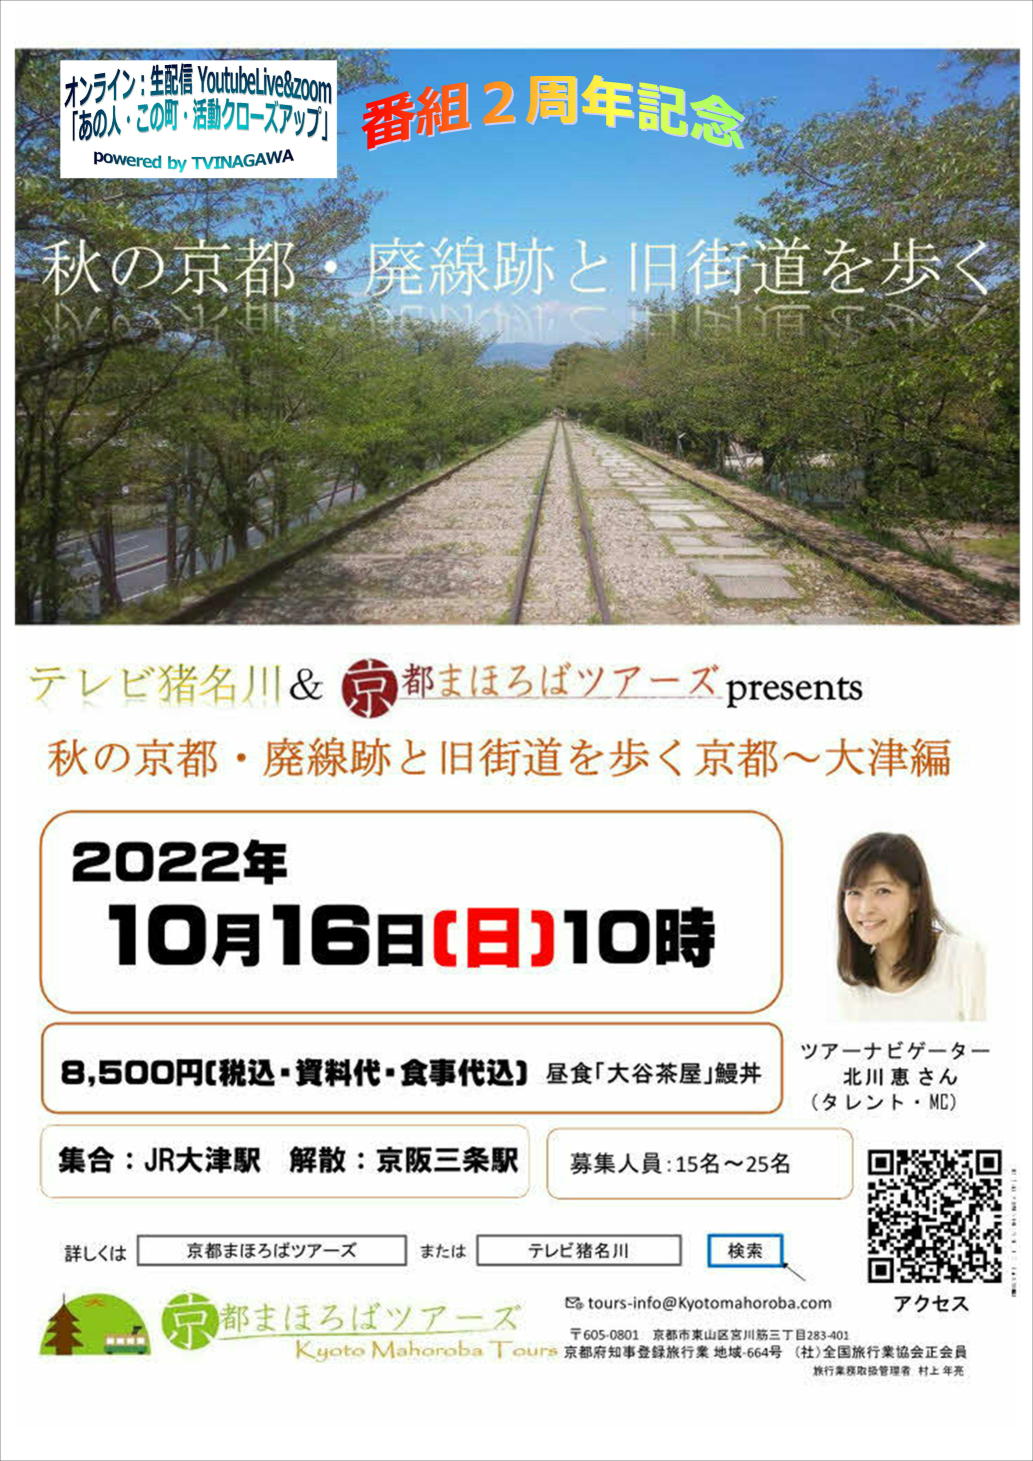 7月 | 2022 | テレビ猪名川コミュニケーションチャンネル